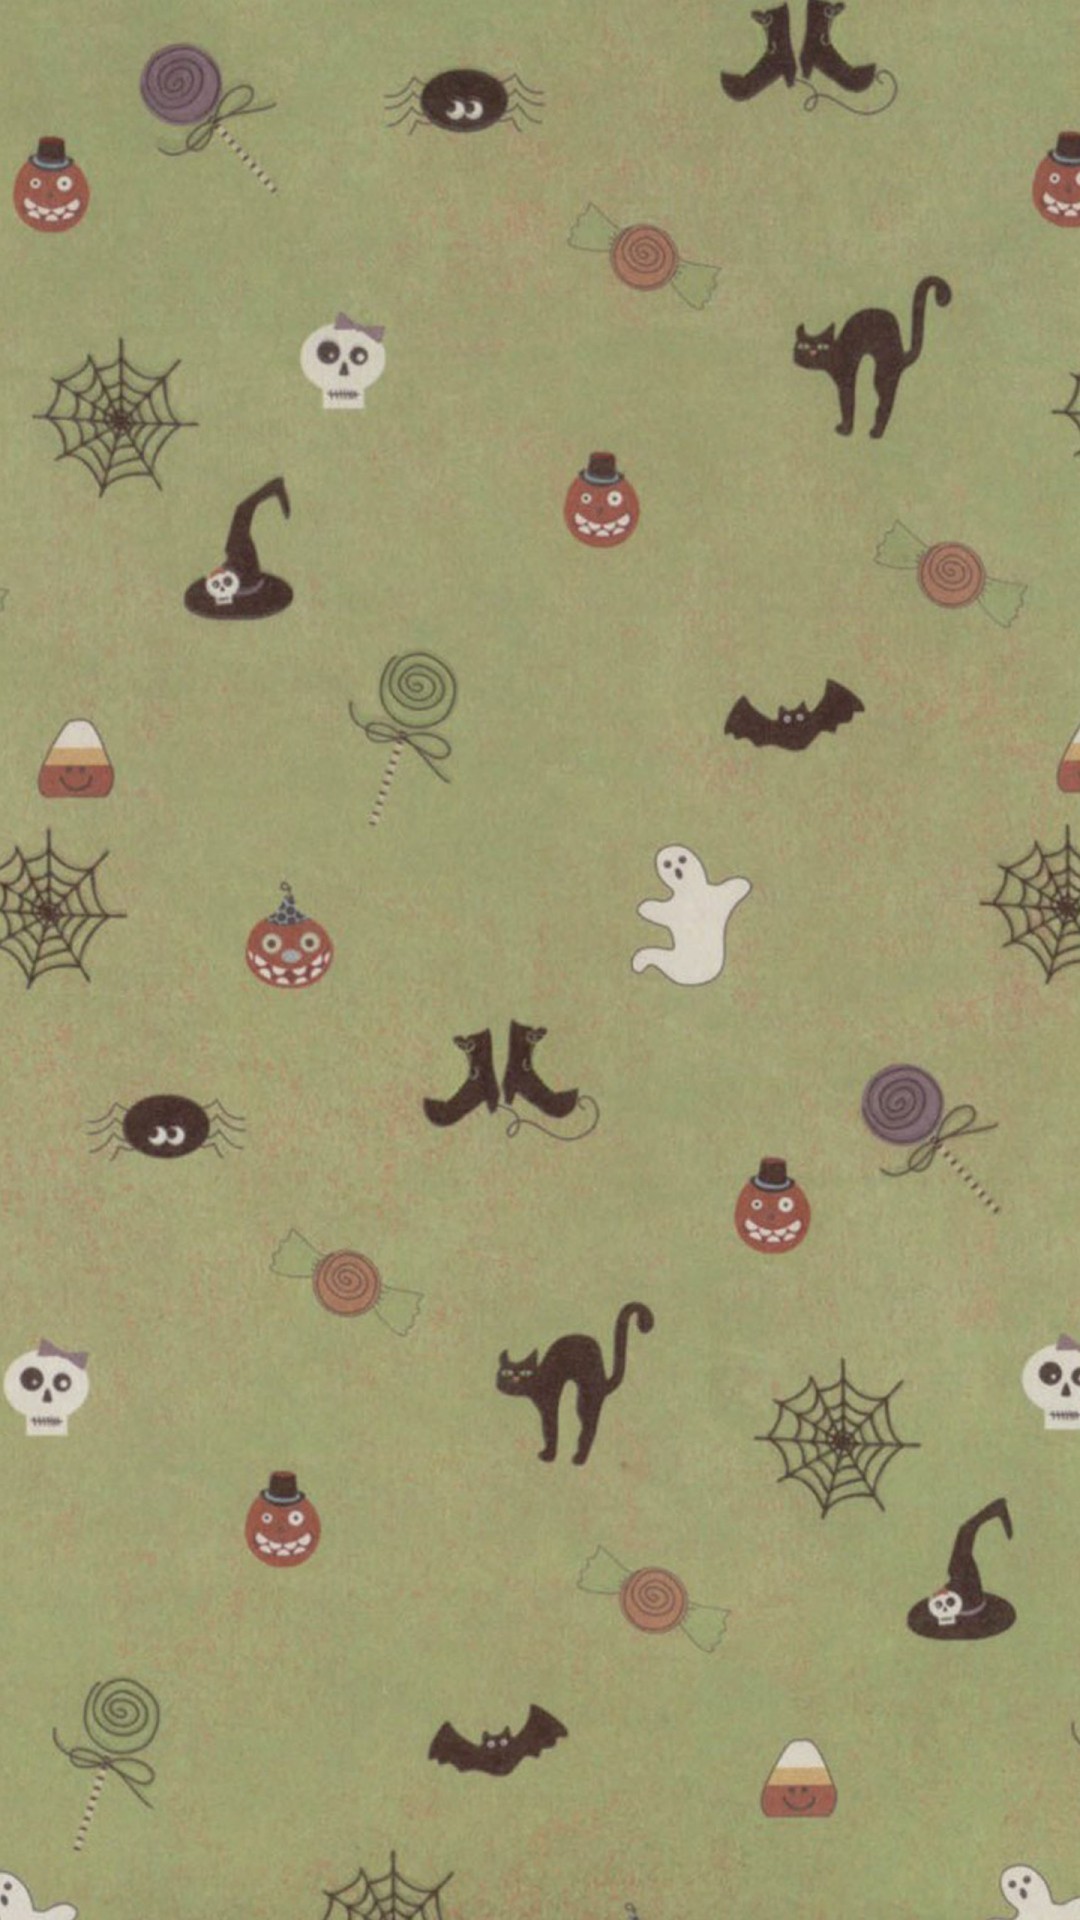 Cute Halloween Wallpaper Iphone 6 - HD Wallpaper 